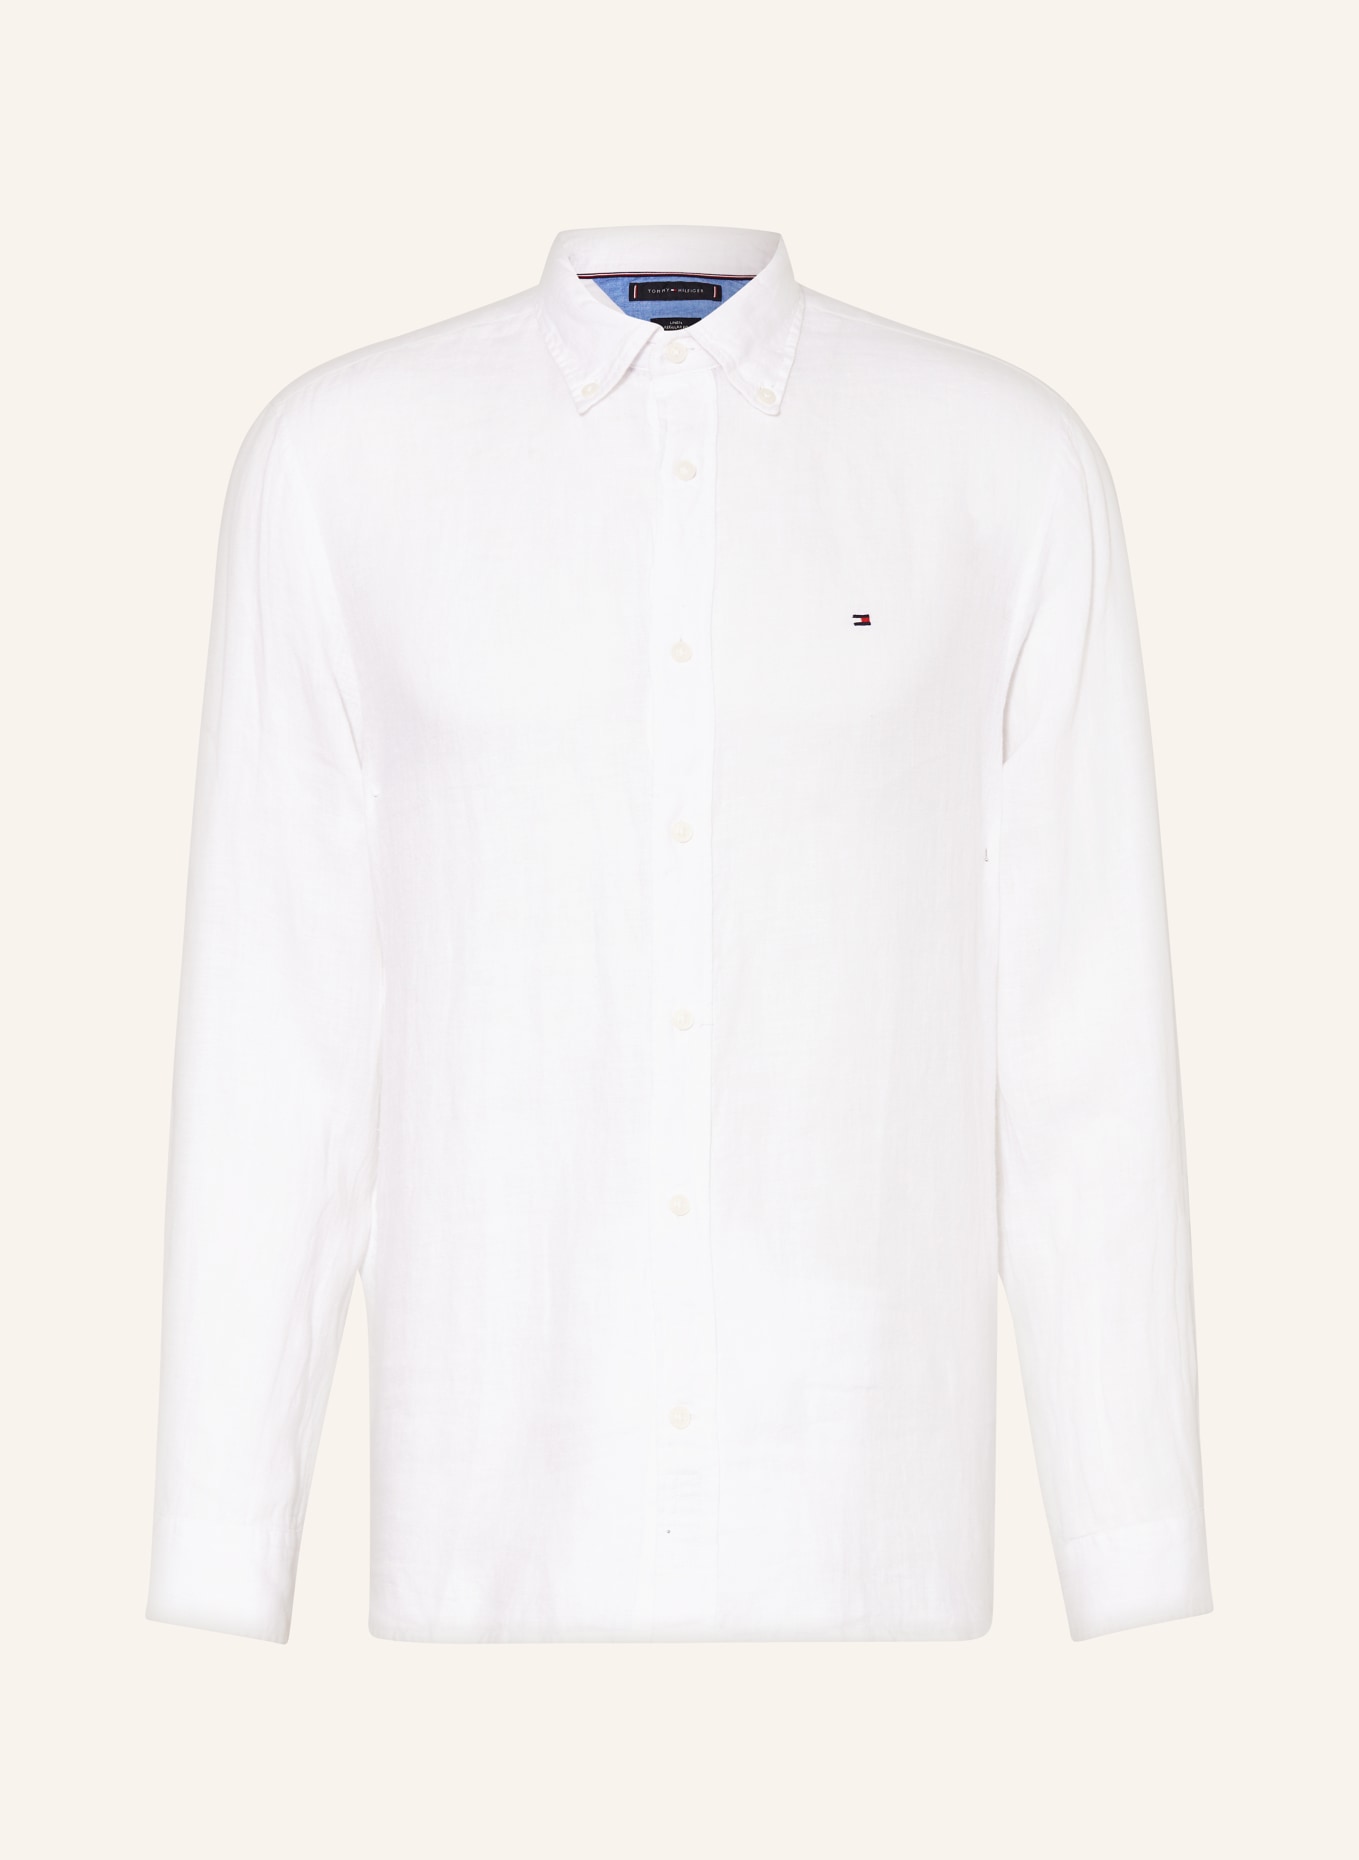 TOMMY HILFIGER Leinenhemd Regular Fit, Farbe: WEISS (Bild 1)